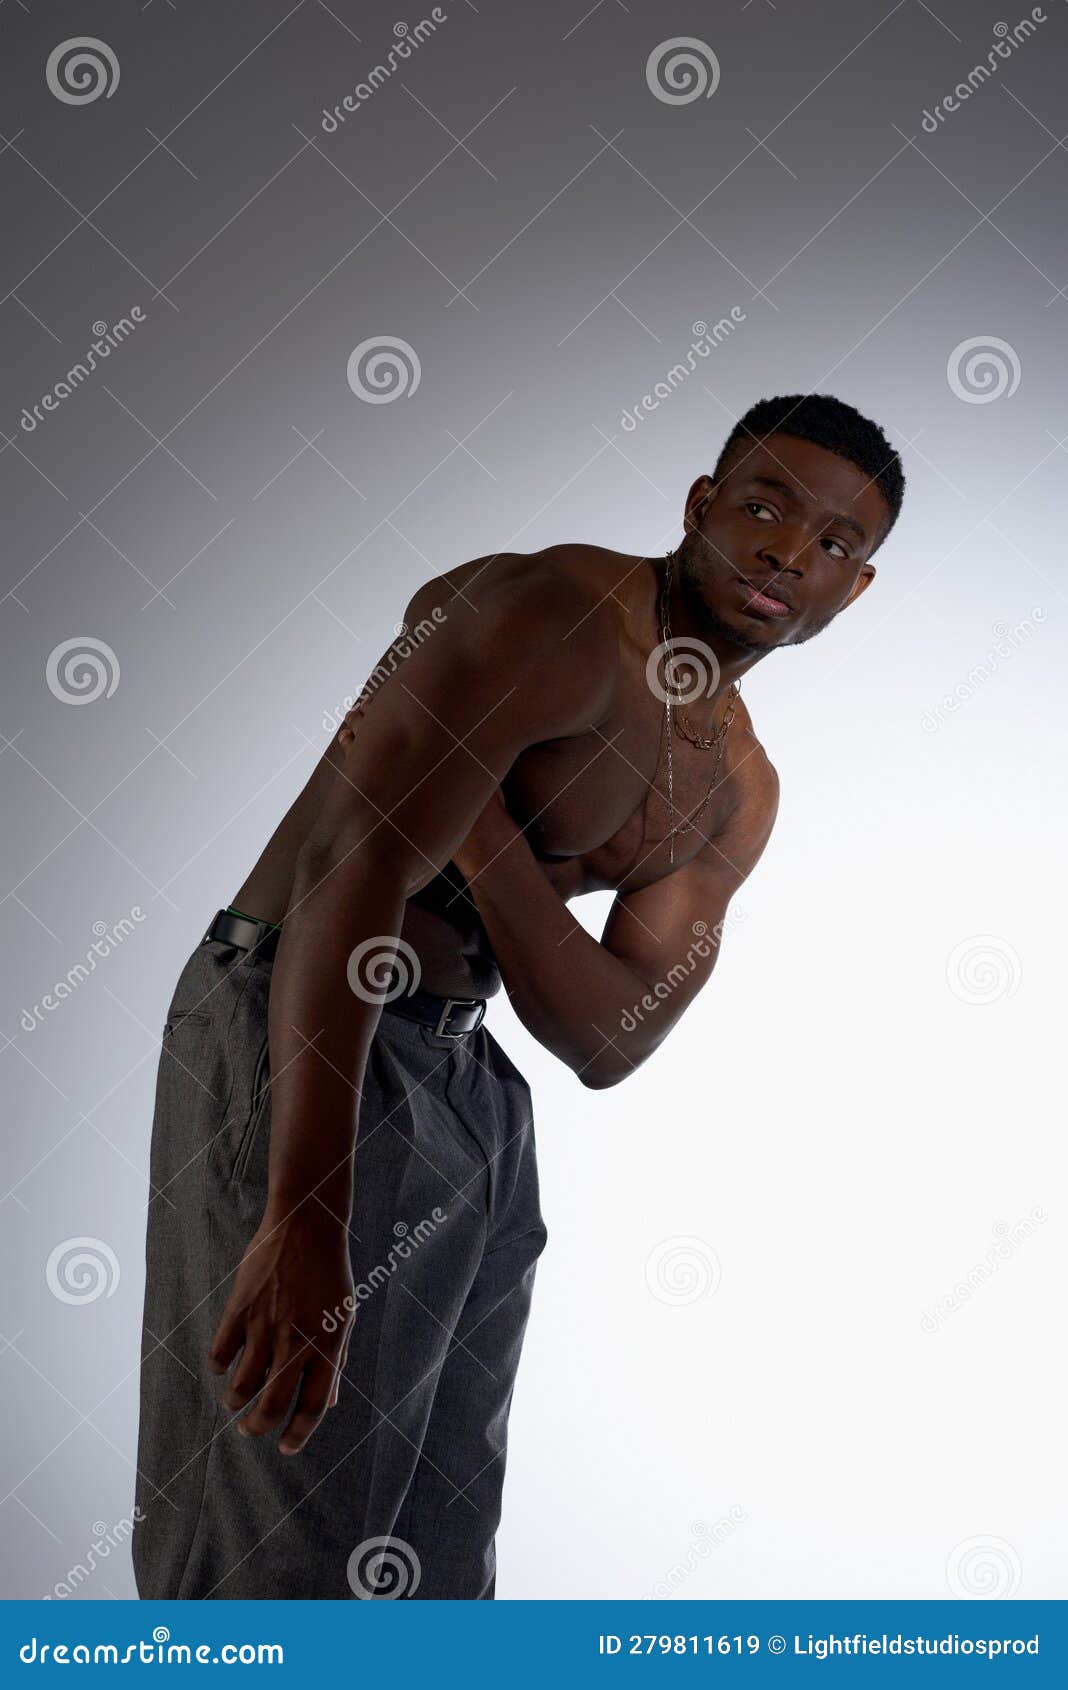 有裸体躯干的喜悦的非洲小伙子 库存图片. 图片 包括有 健康, 男性, 执行, 运作, 有吸引力的, 查找 - 113457429